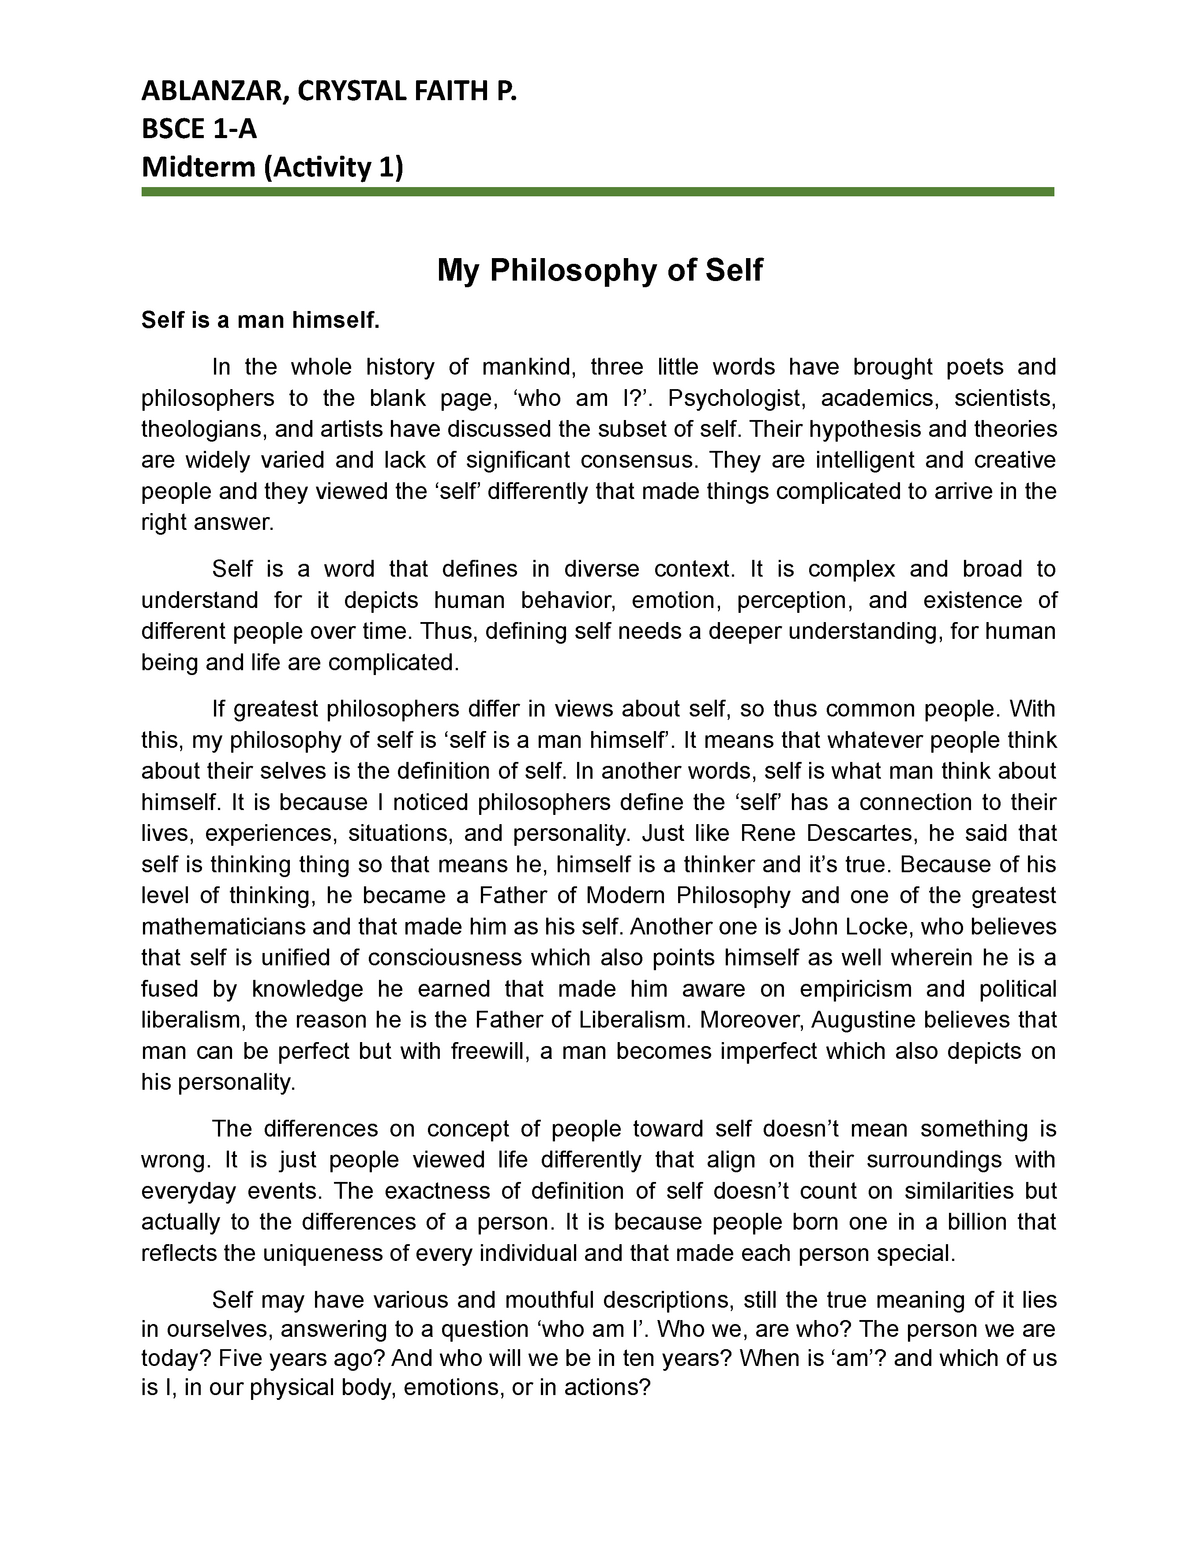 philosophy understanding the self essay